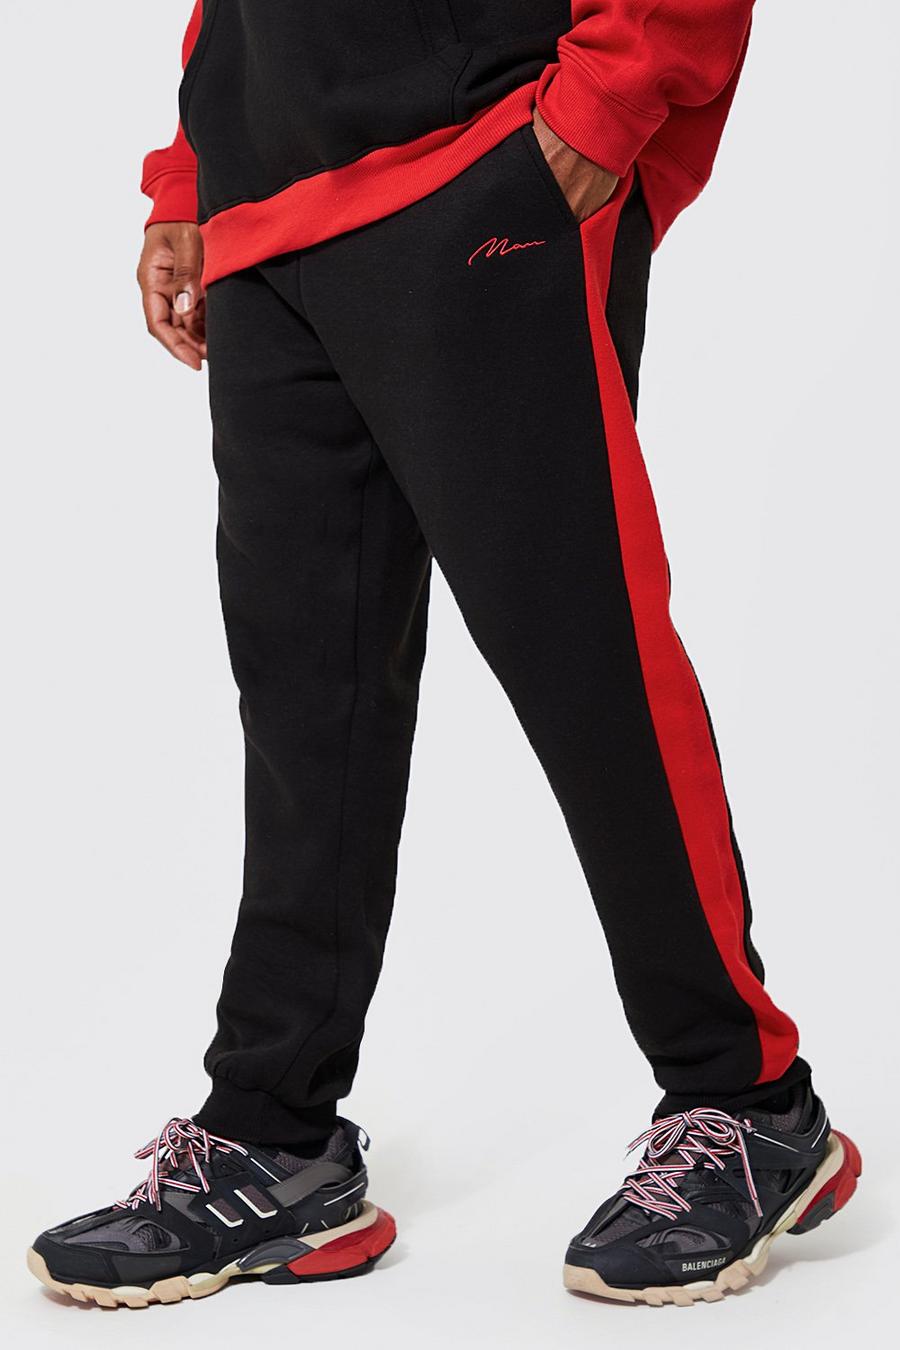 Pantaloni tuta Plus Size con pannelli stretti e scritta Man, Black nero